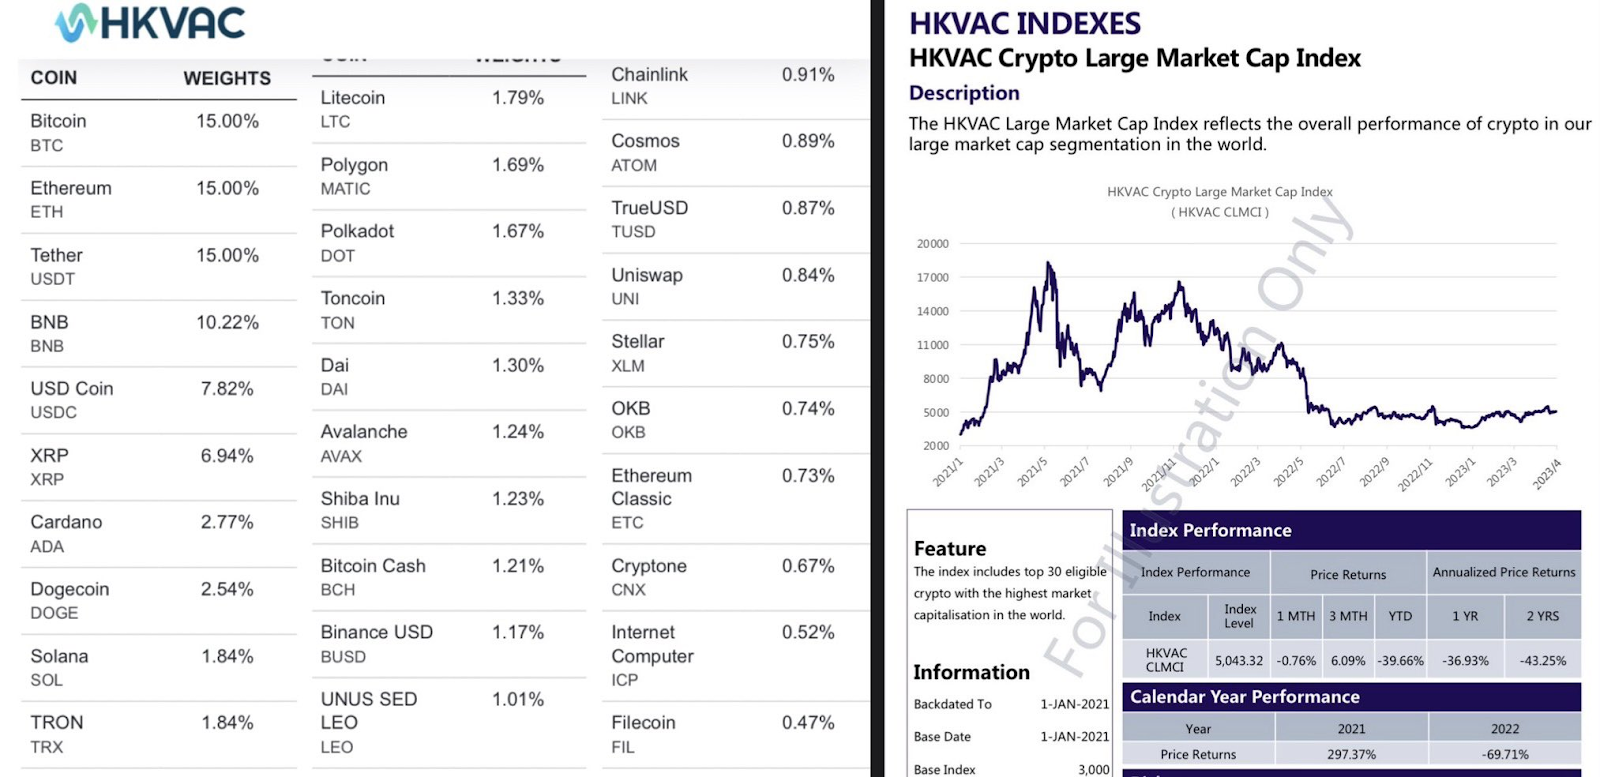 Cardano HKVAC Crypto Index